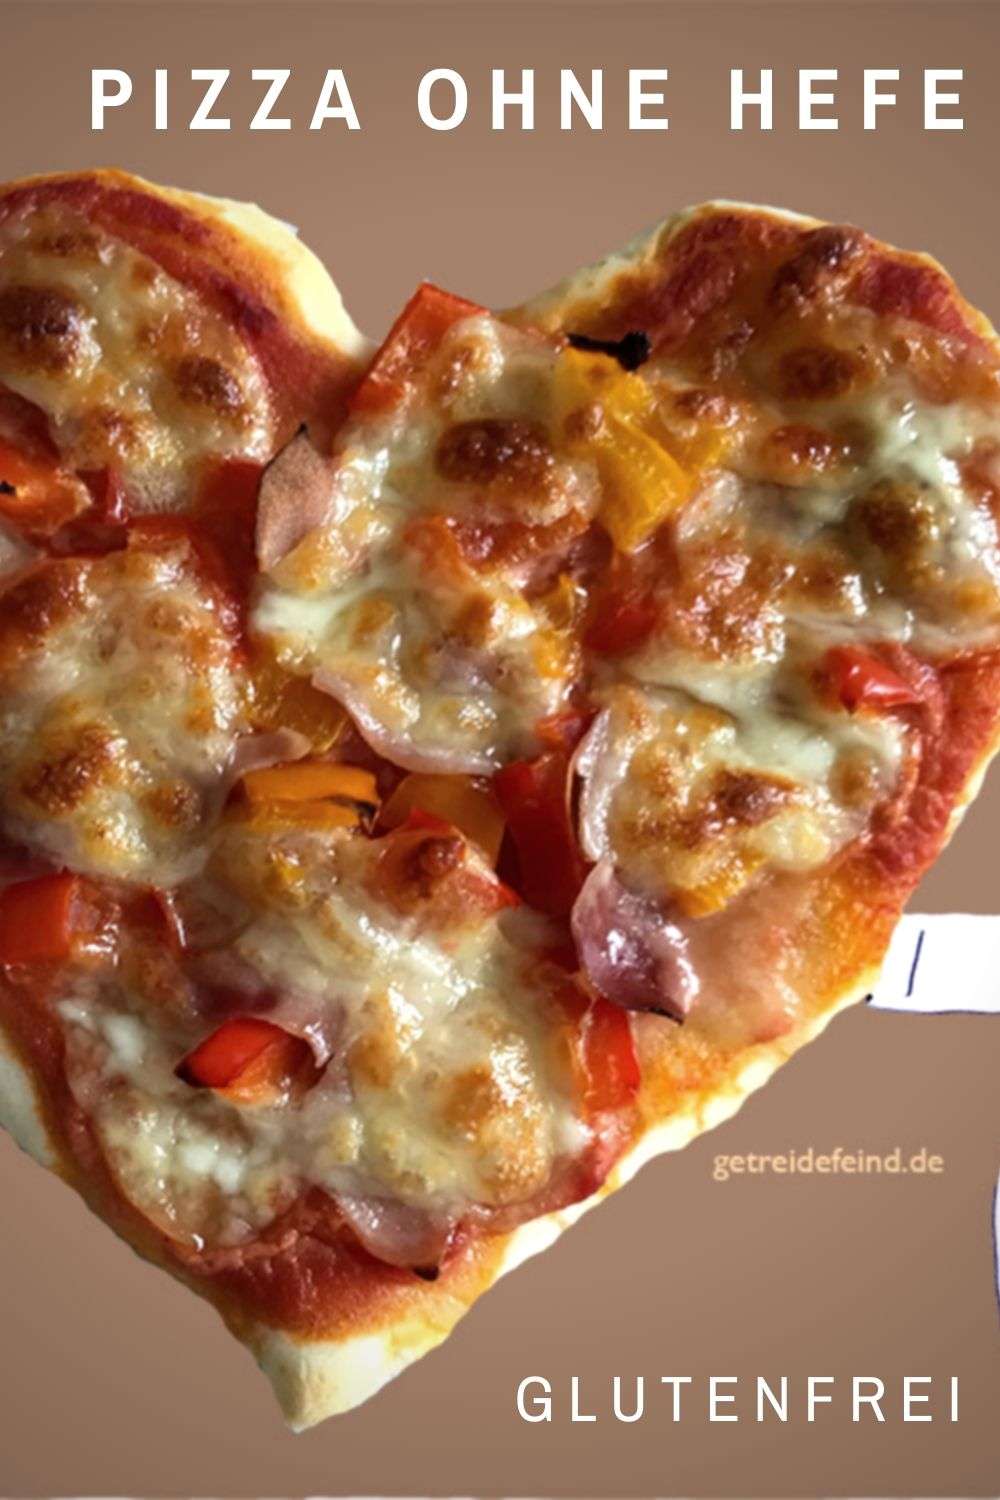 Glutenfreie Pizza ohne Hefe : getreidefeind